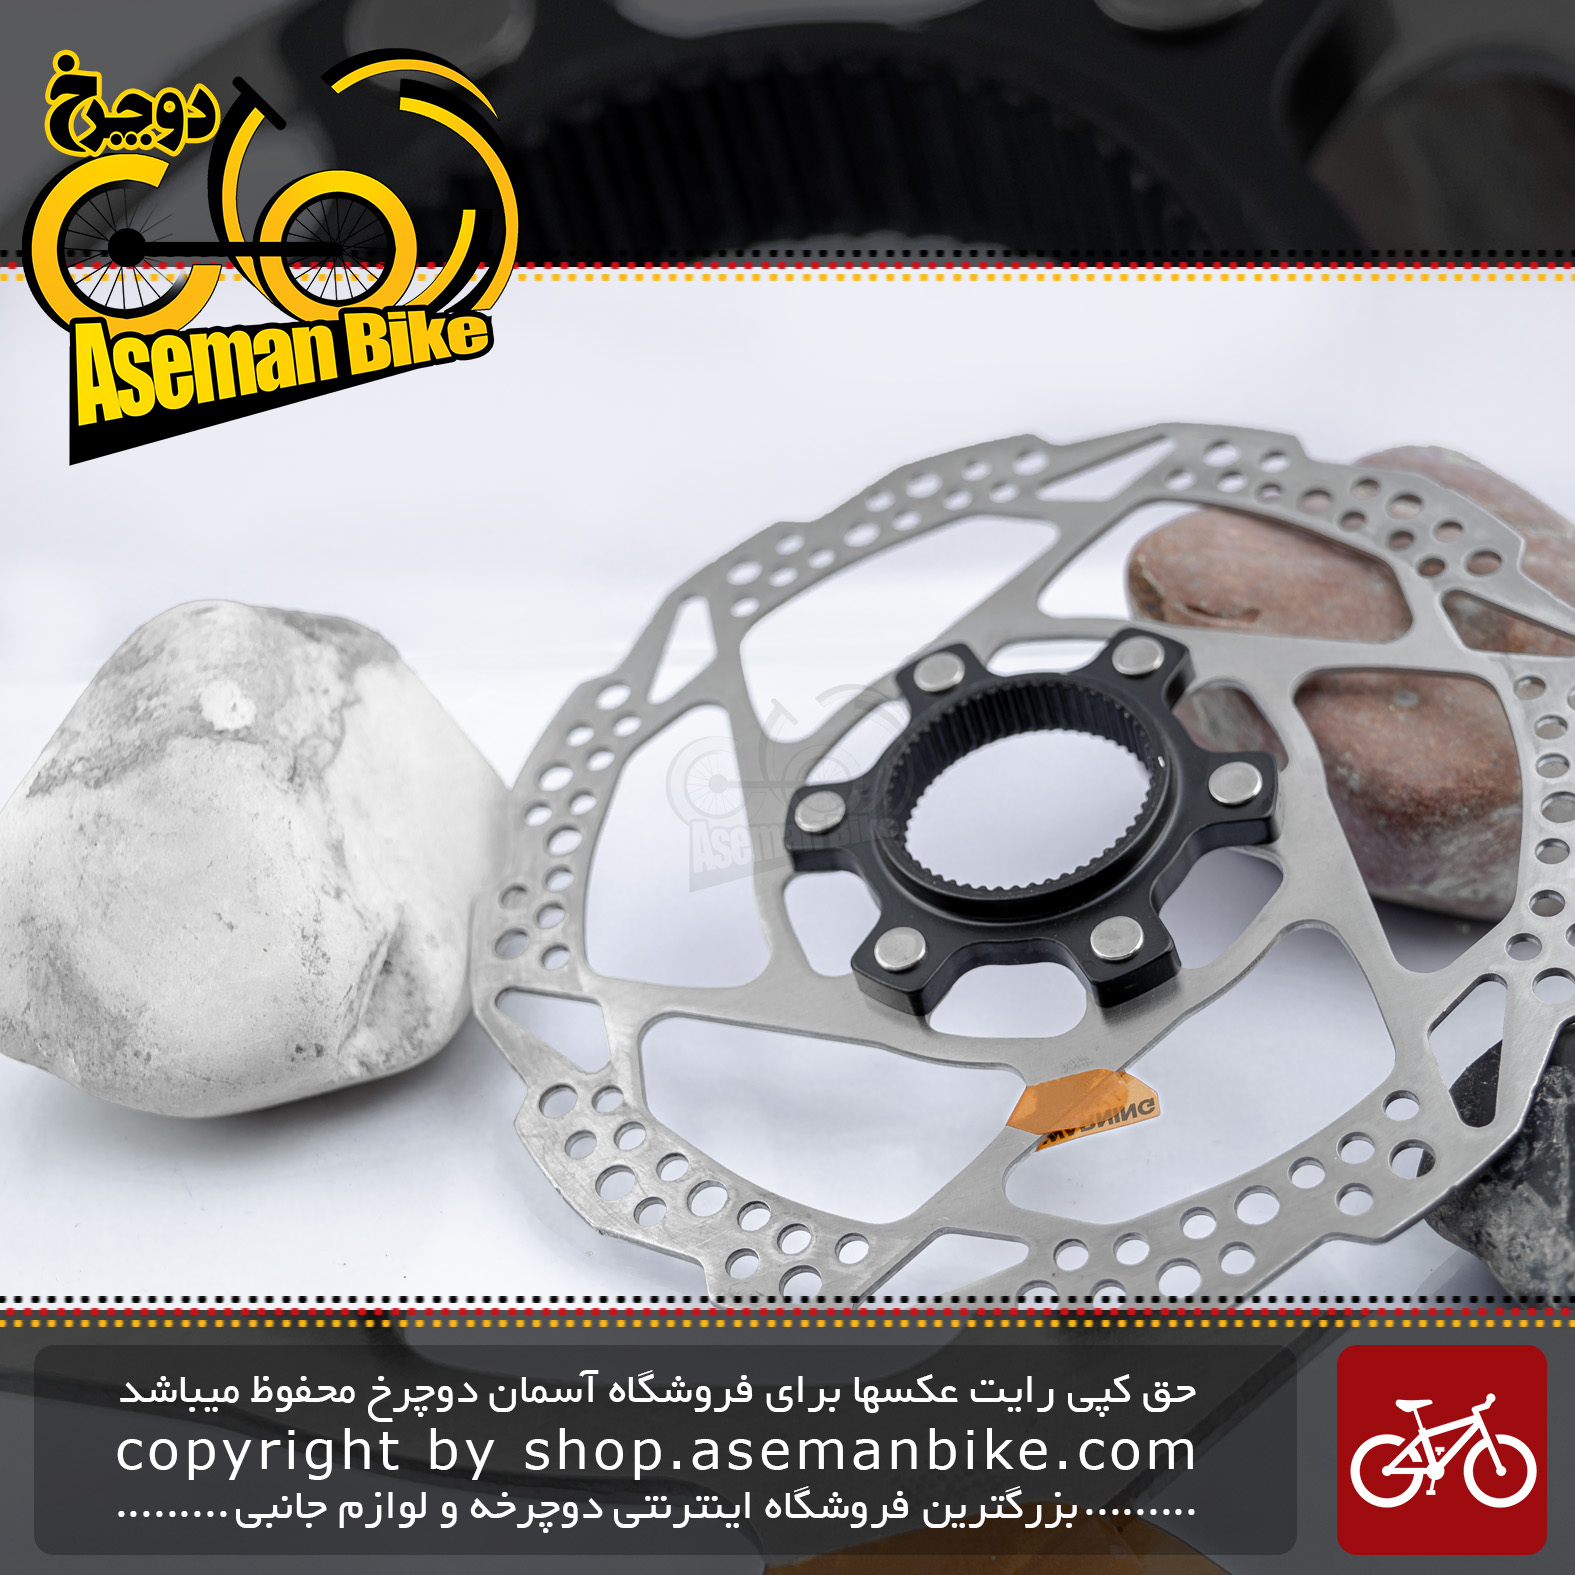 روتور صفحه دیسک دوچرخه شیمانو سری دئور اکس تی مدل آر تی 81 نقره ای 160 میلیمتری Shimano Bicycle Disc Rotor Deore XT RT81 Silver 160mm